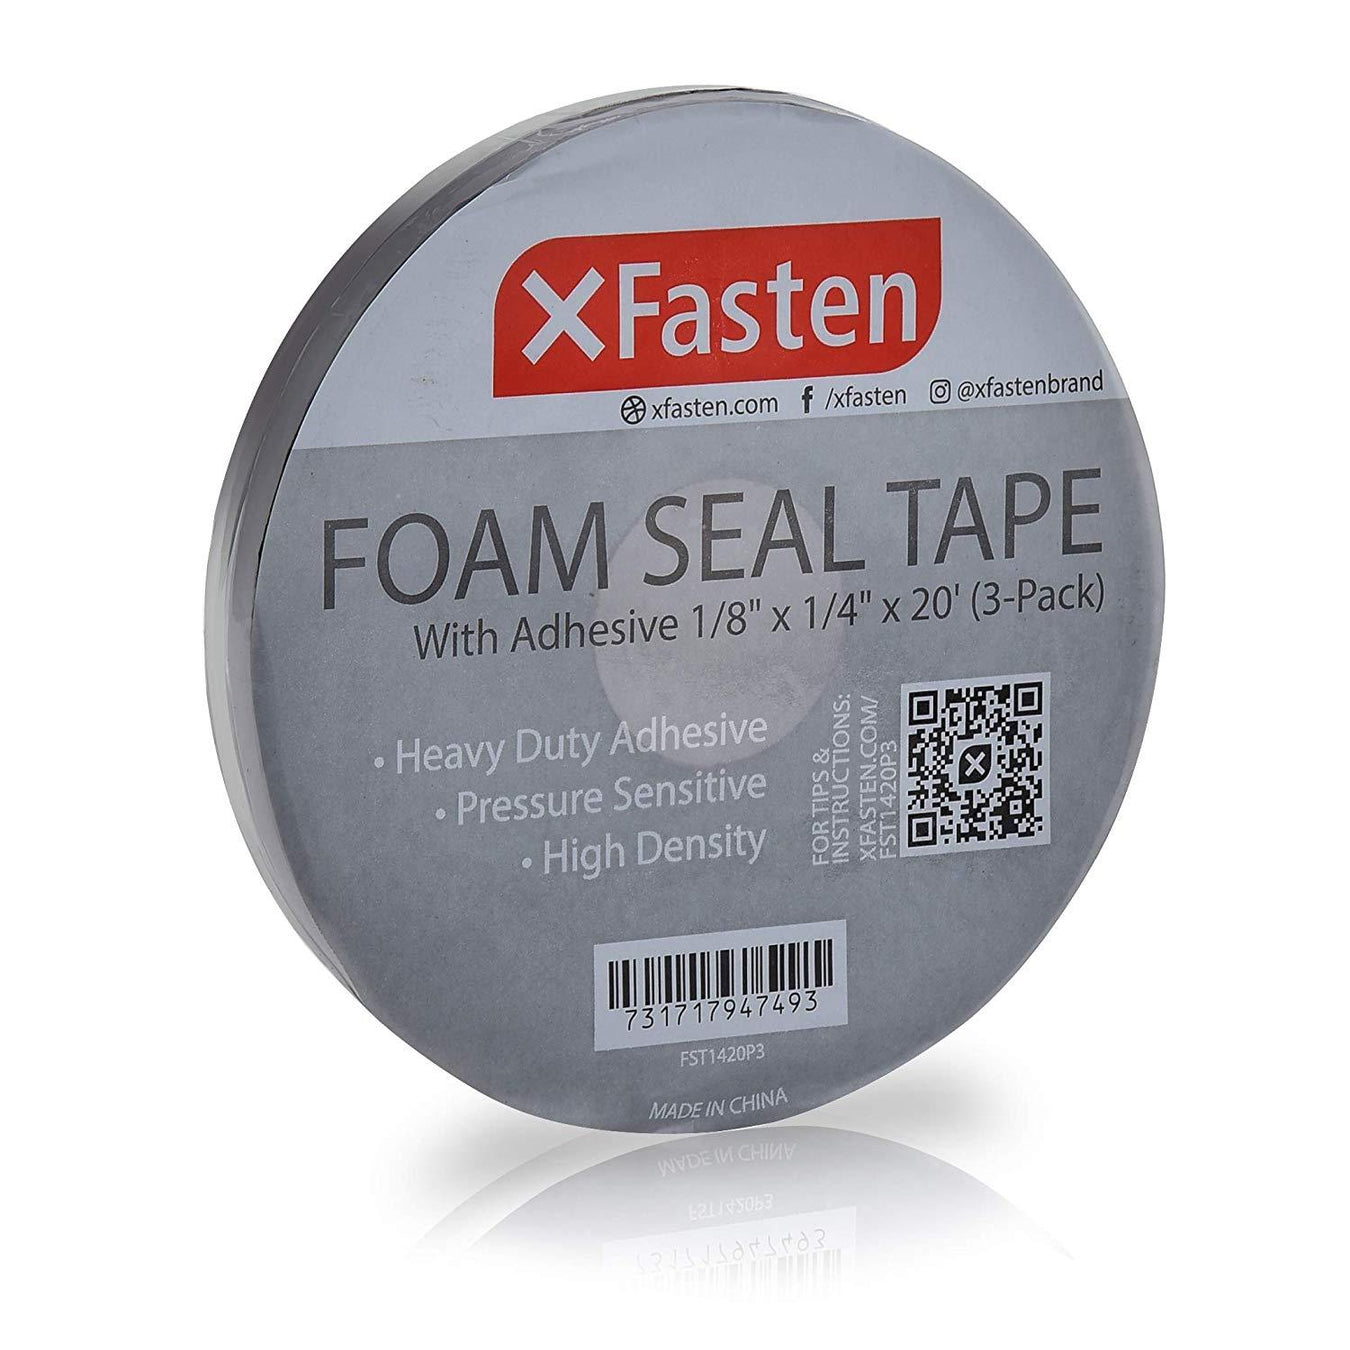 Foam Seal Tape - XFasten